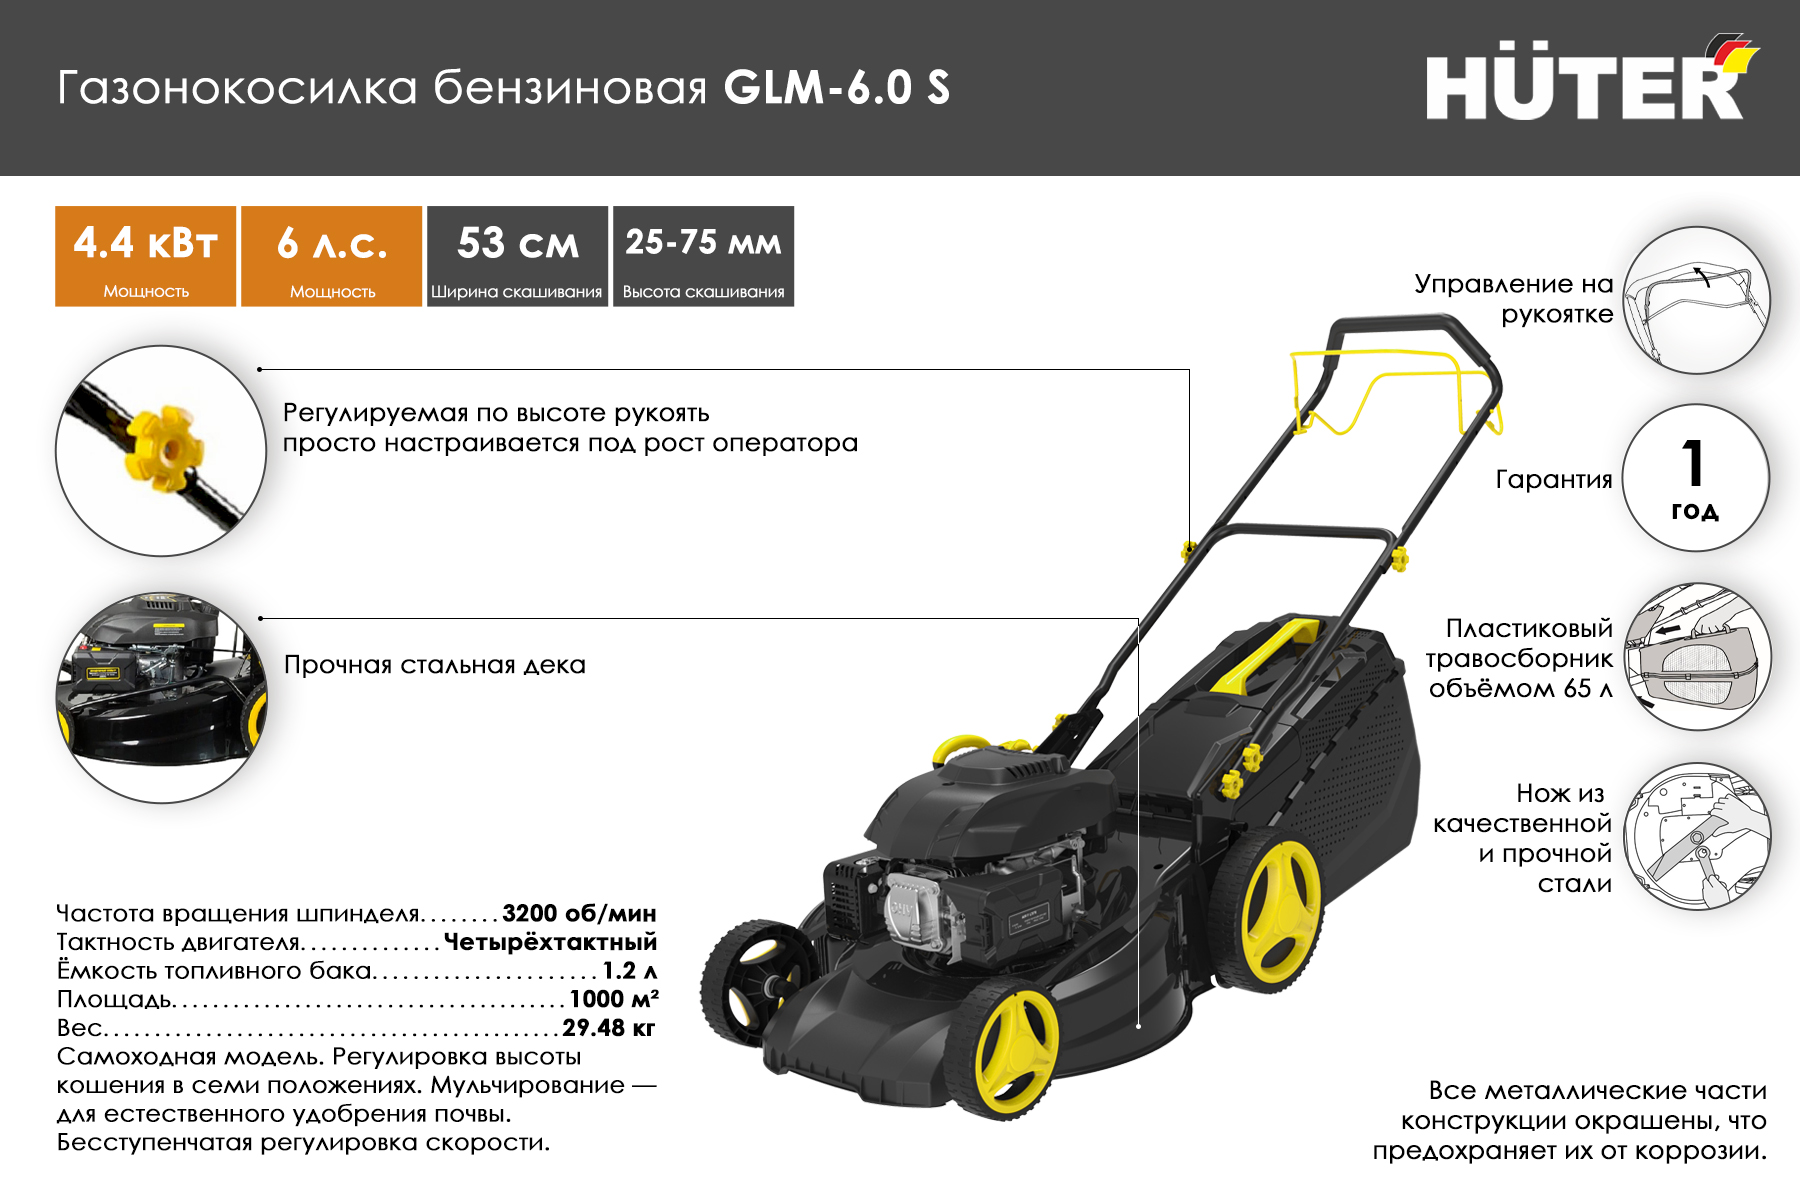 Газонокосилка роторная Huter GLM-6.0 S 70/3/8